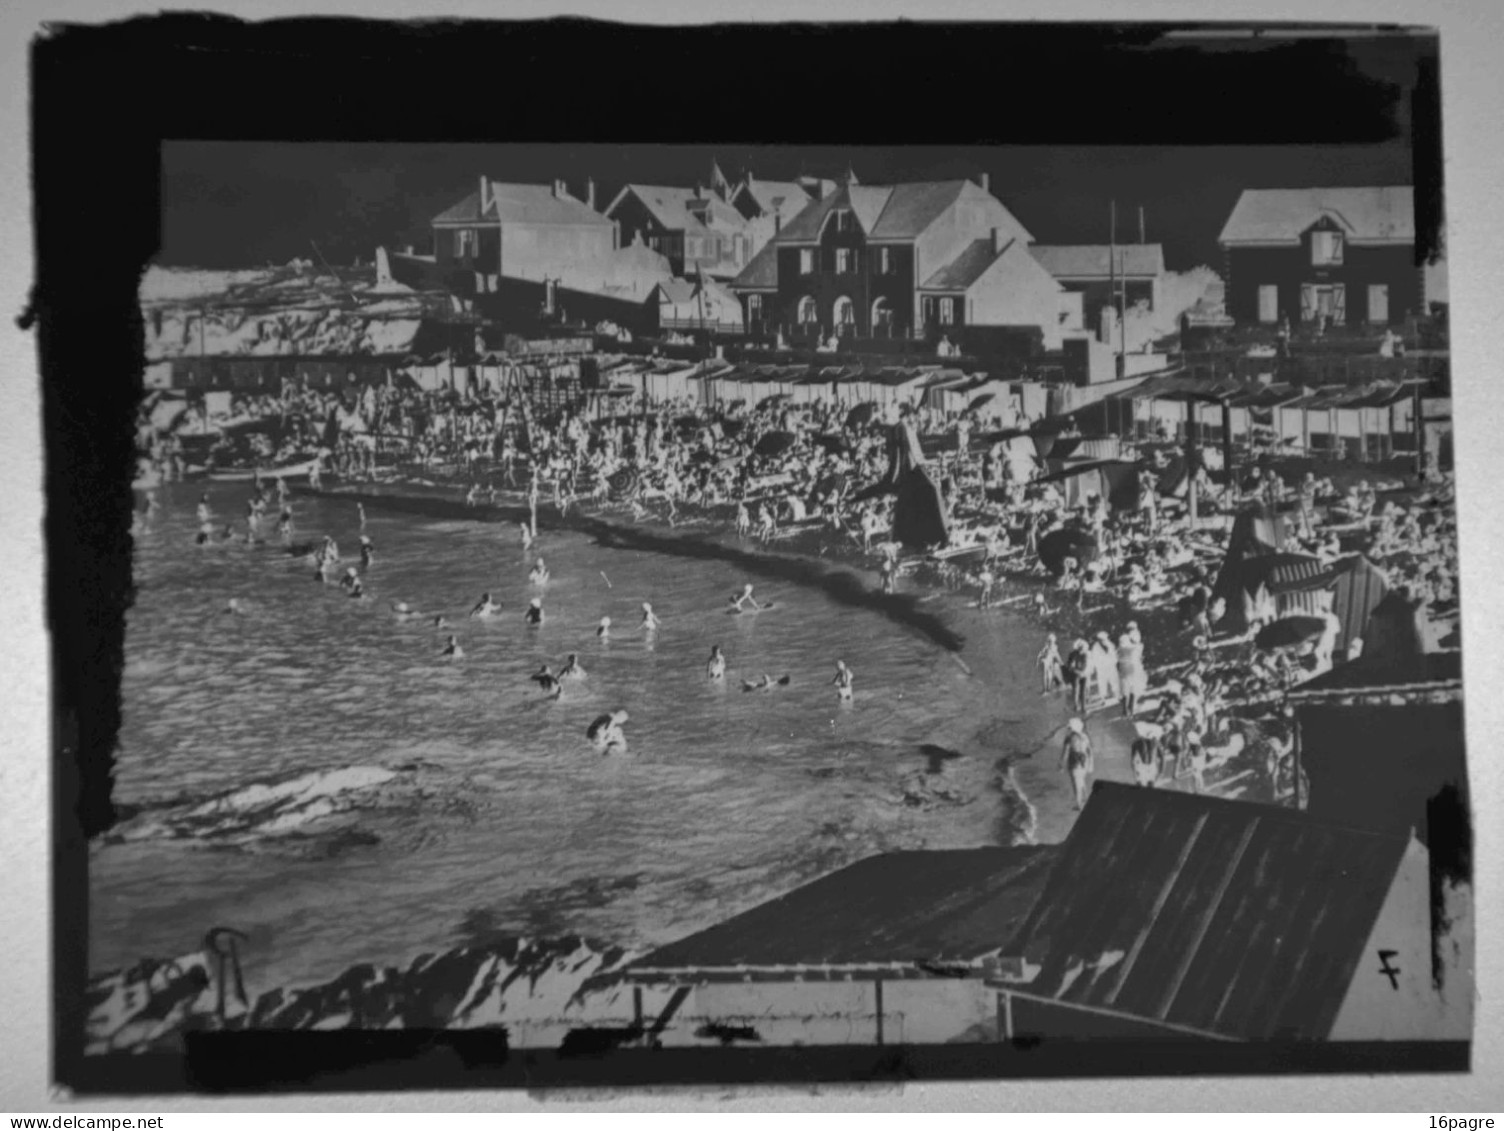 PLAQUE DE VERRE. PLAGE DE BATZ-SUR-MER, LOIRE-ATLANTIQUE. VERS 1950 - Diapositivas De Vidrio